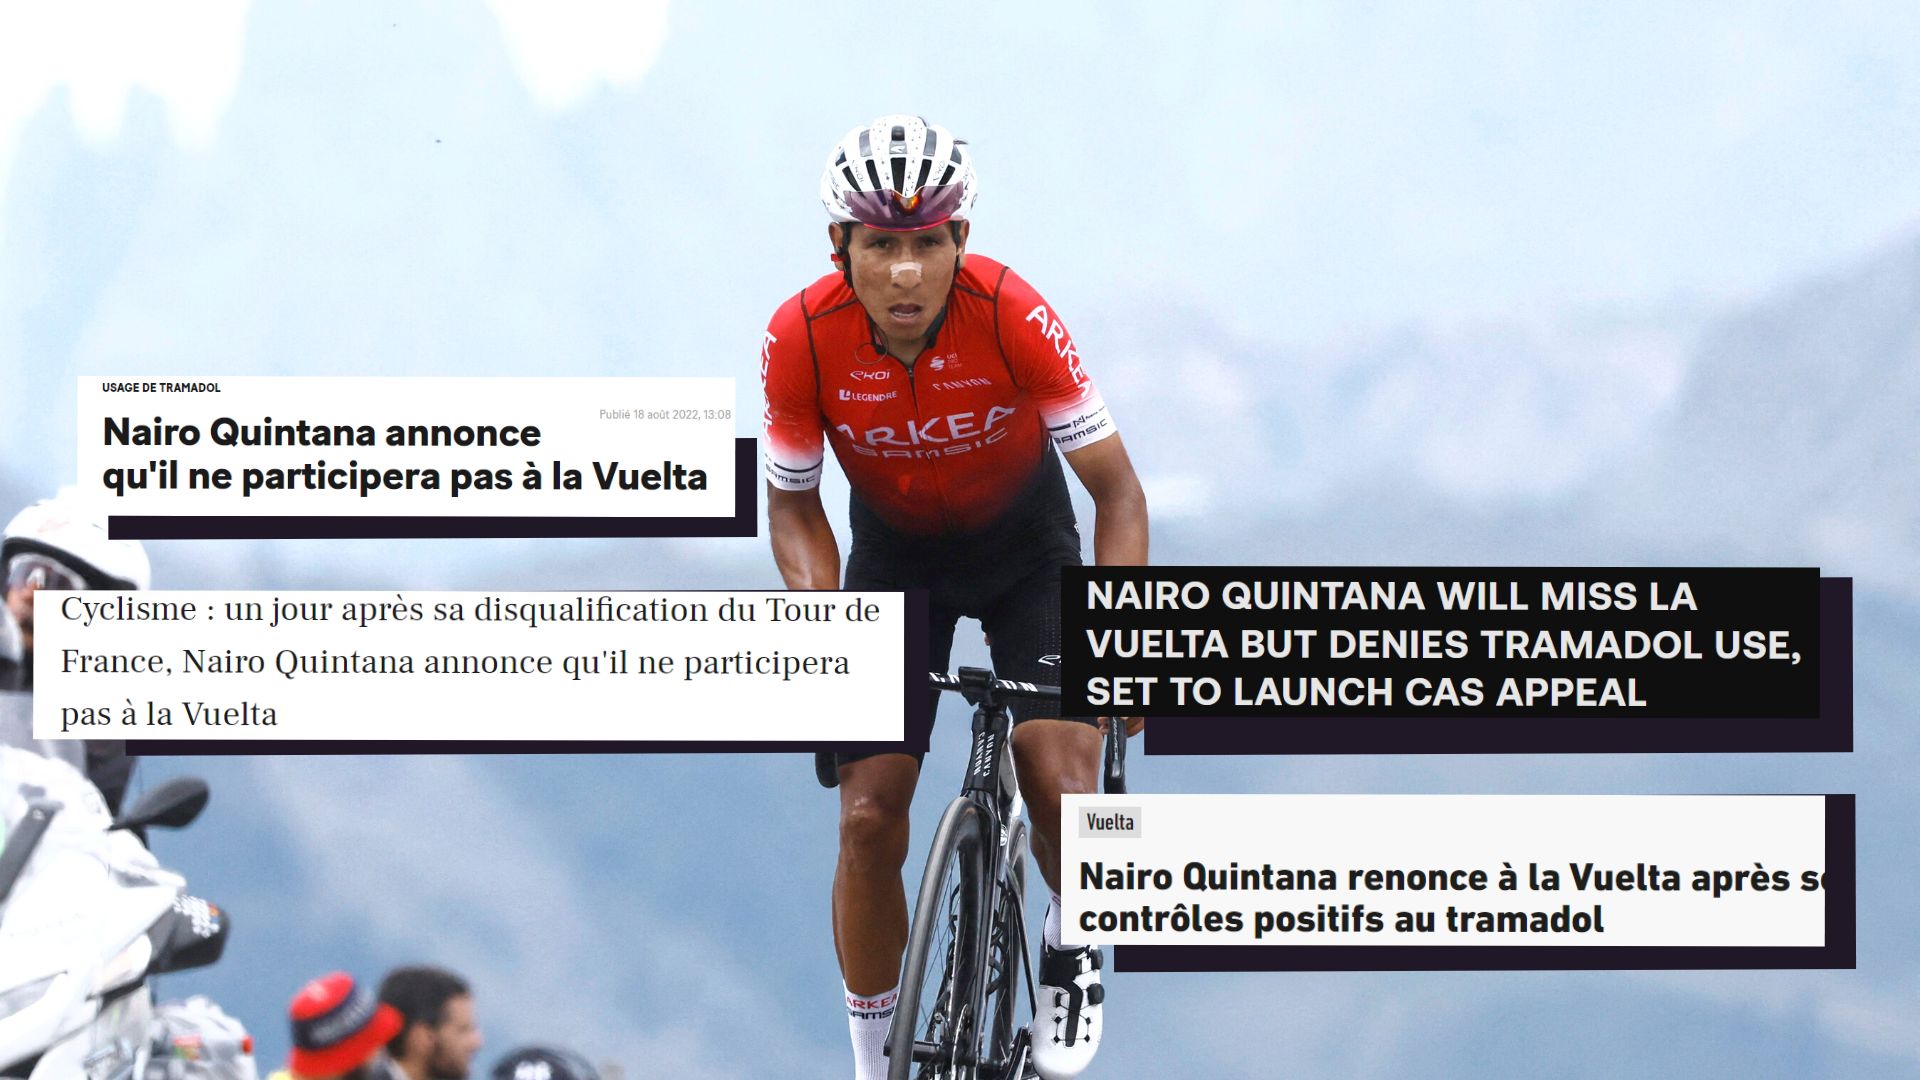 Nairo Quintana renunció a competir en la Vuelta a España y así reaccionaron los medios en Europa